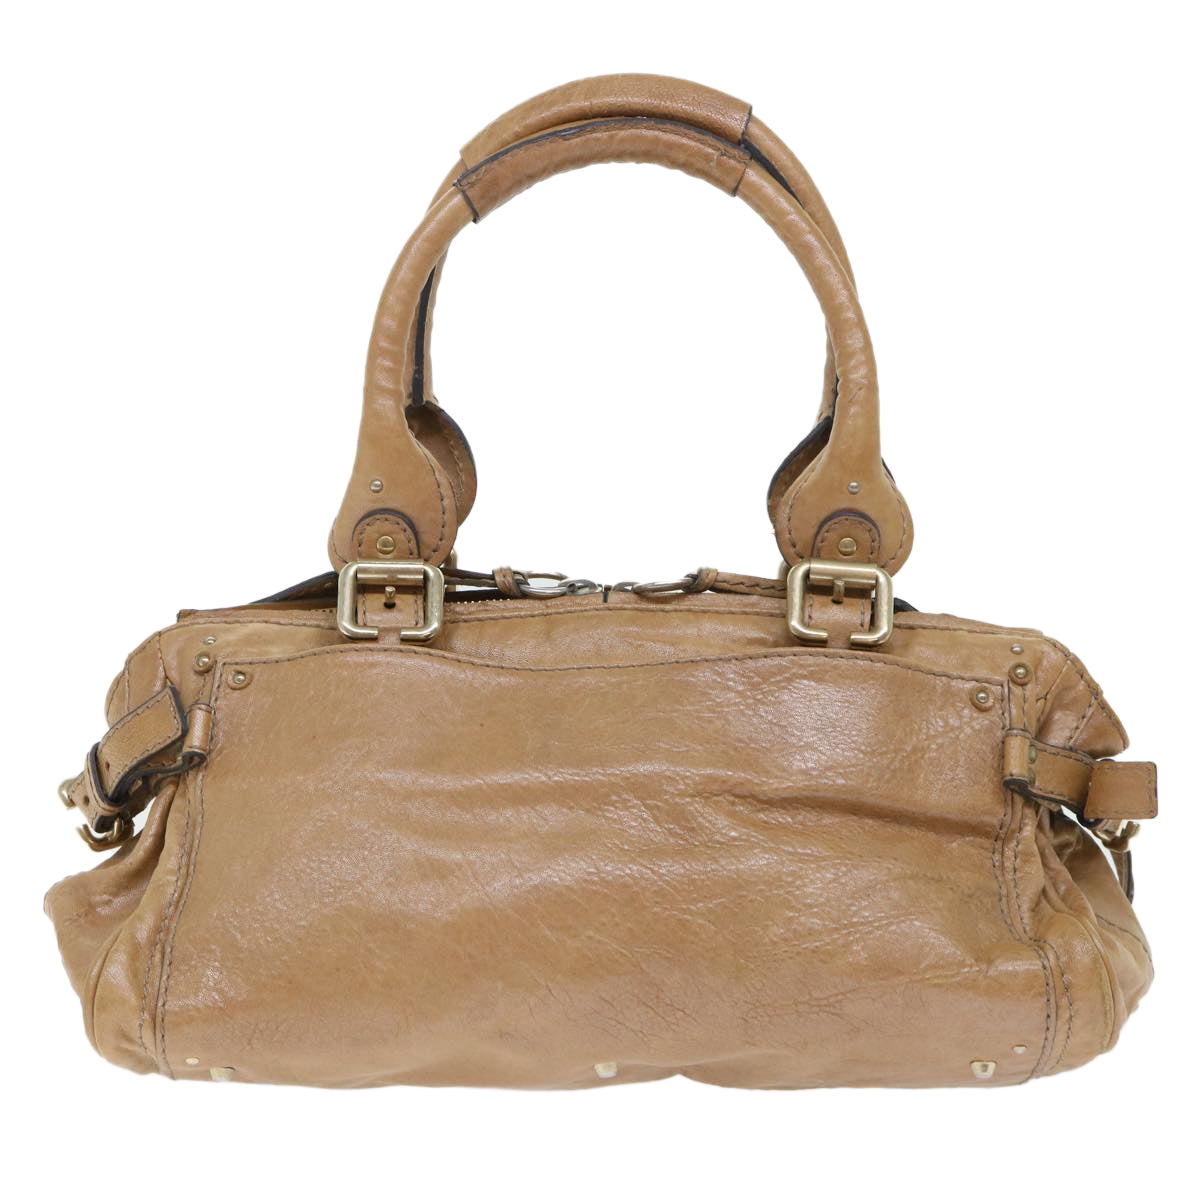 Chloe Paddington Hand Bag Leather Brown 04-07-532 Auth bs7515 - 0